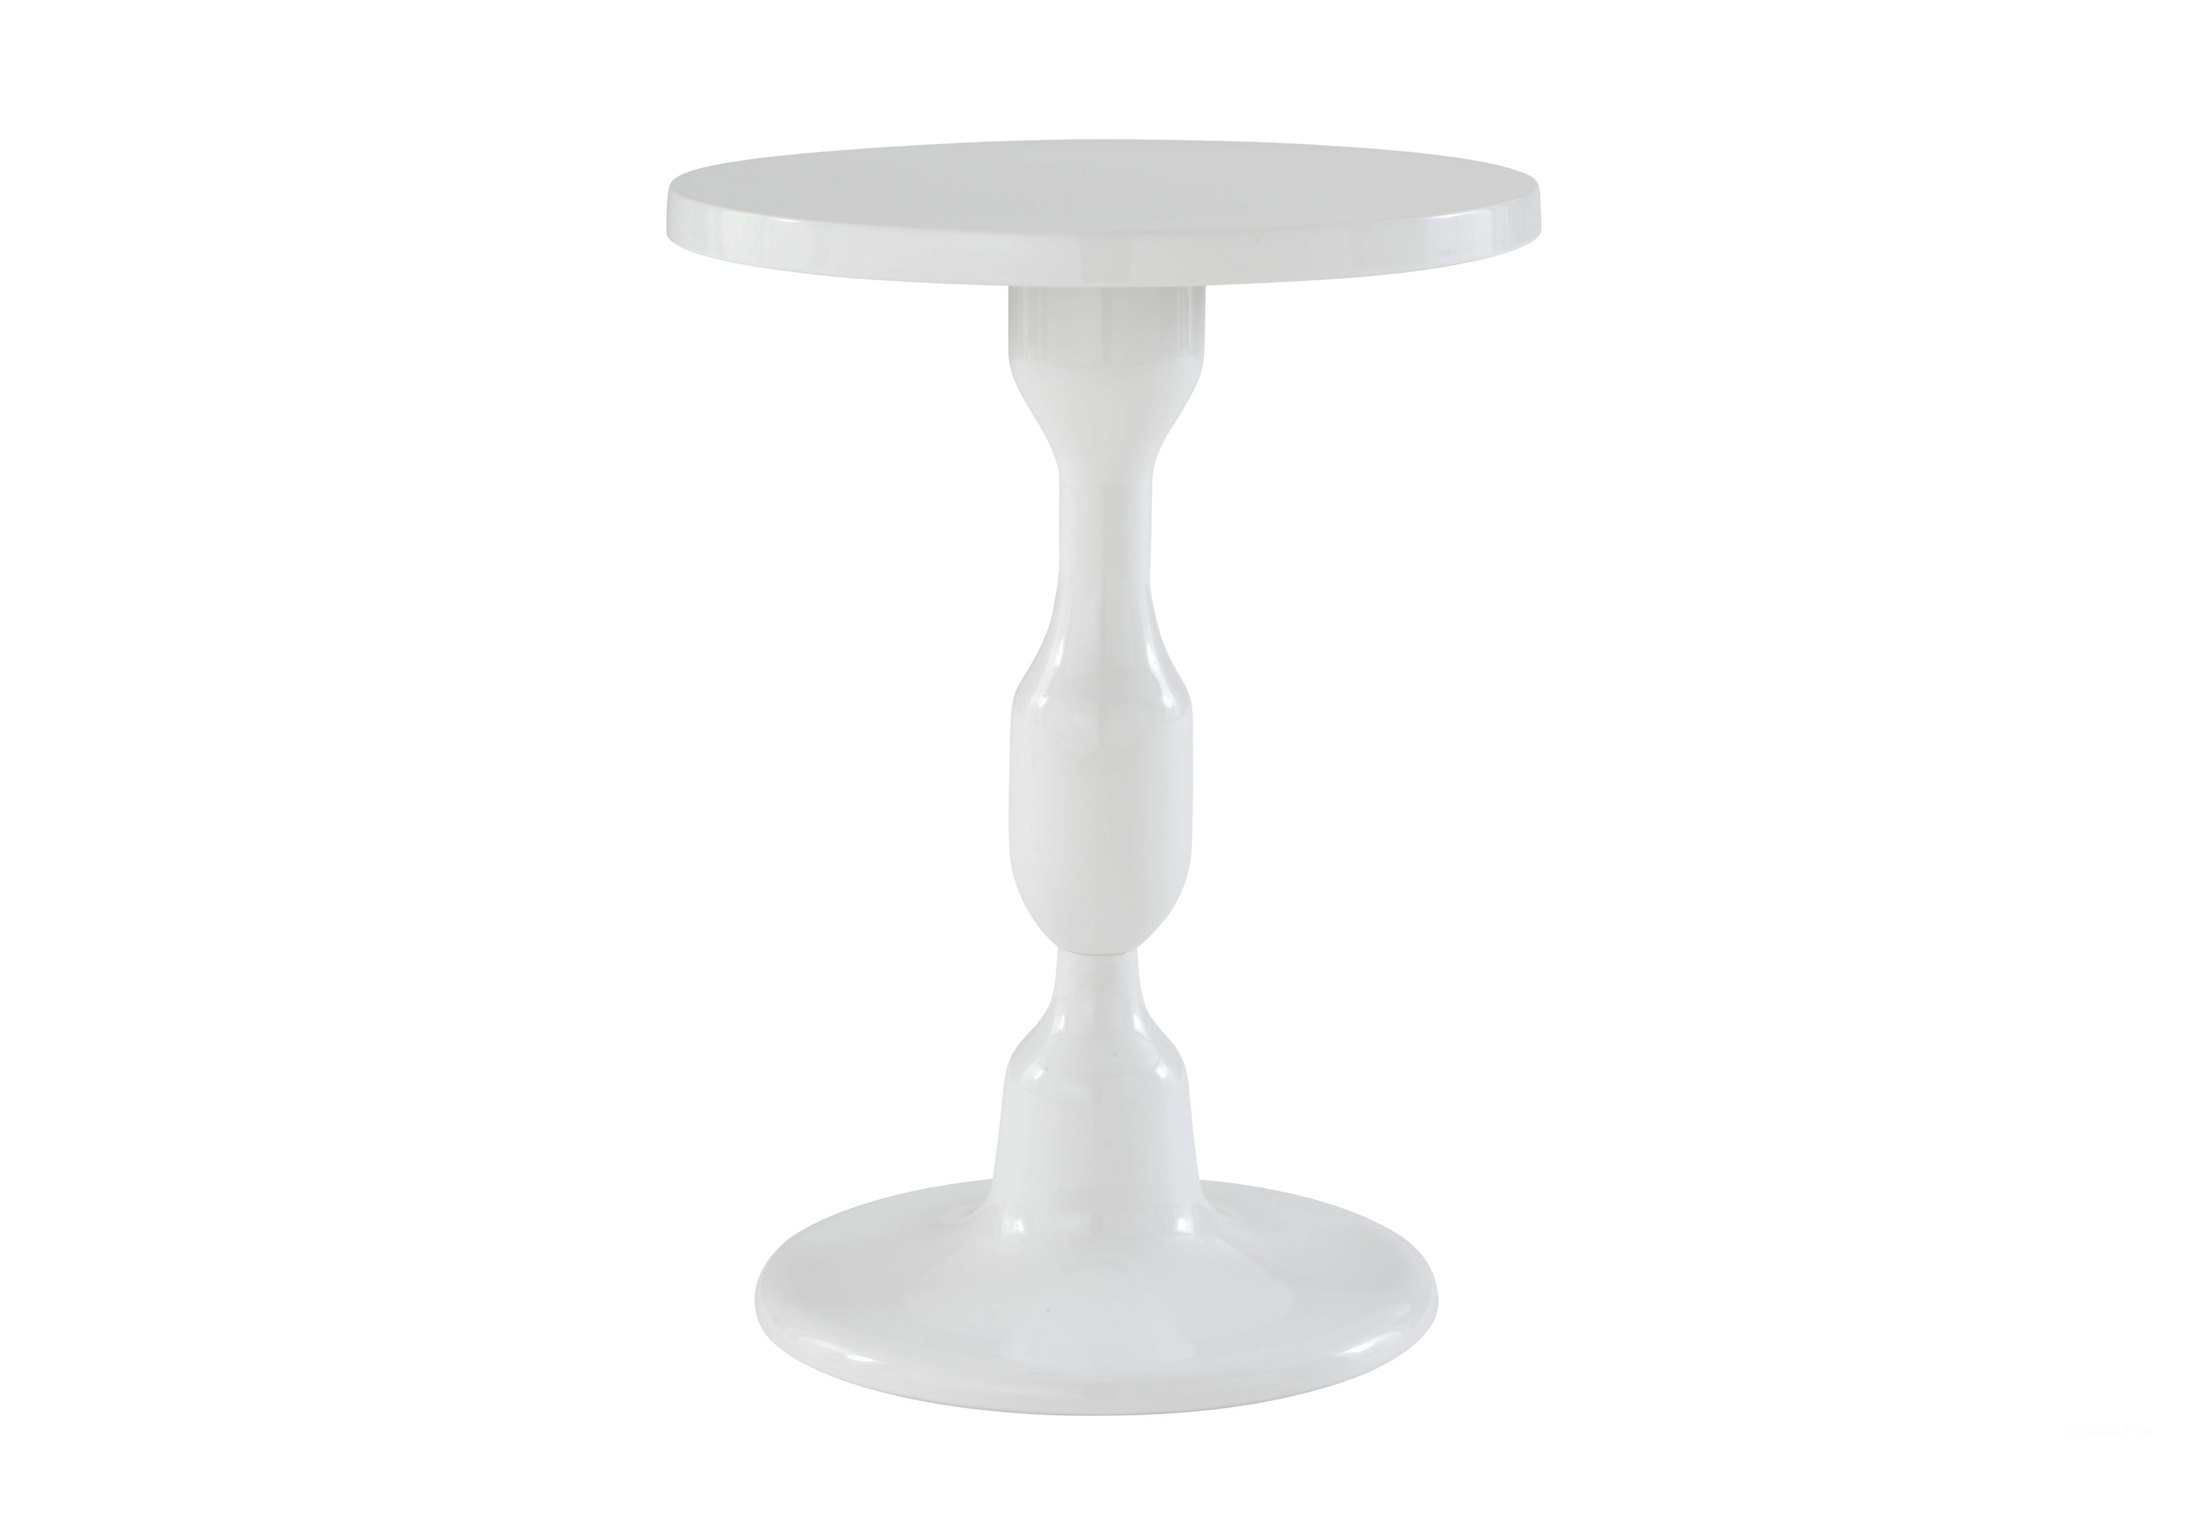 Стол высота 75 см. Столик круглый. Столик белый круглый. Столик придиванный круглый белый. Кофейный столик круглый.